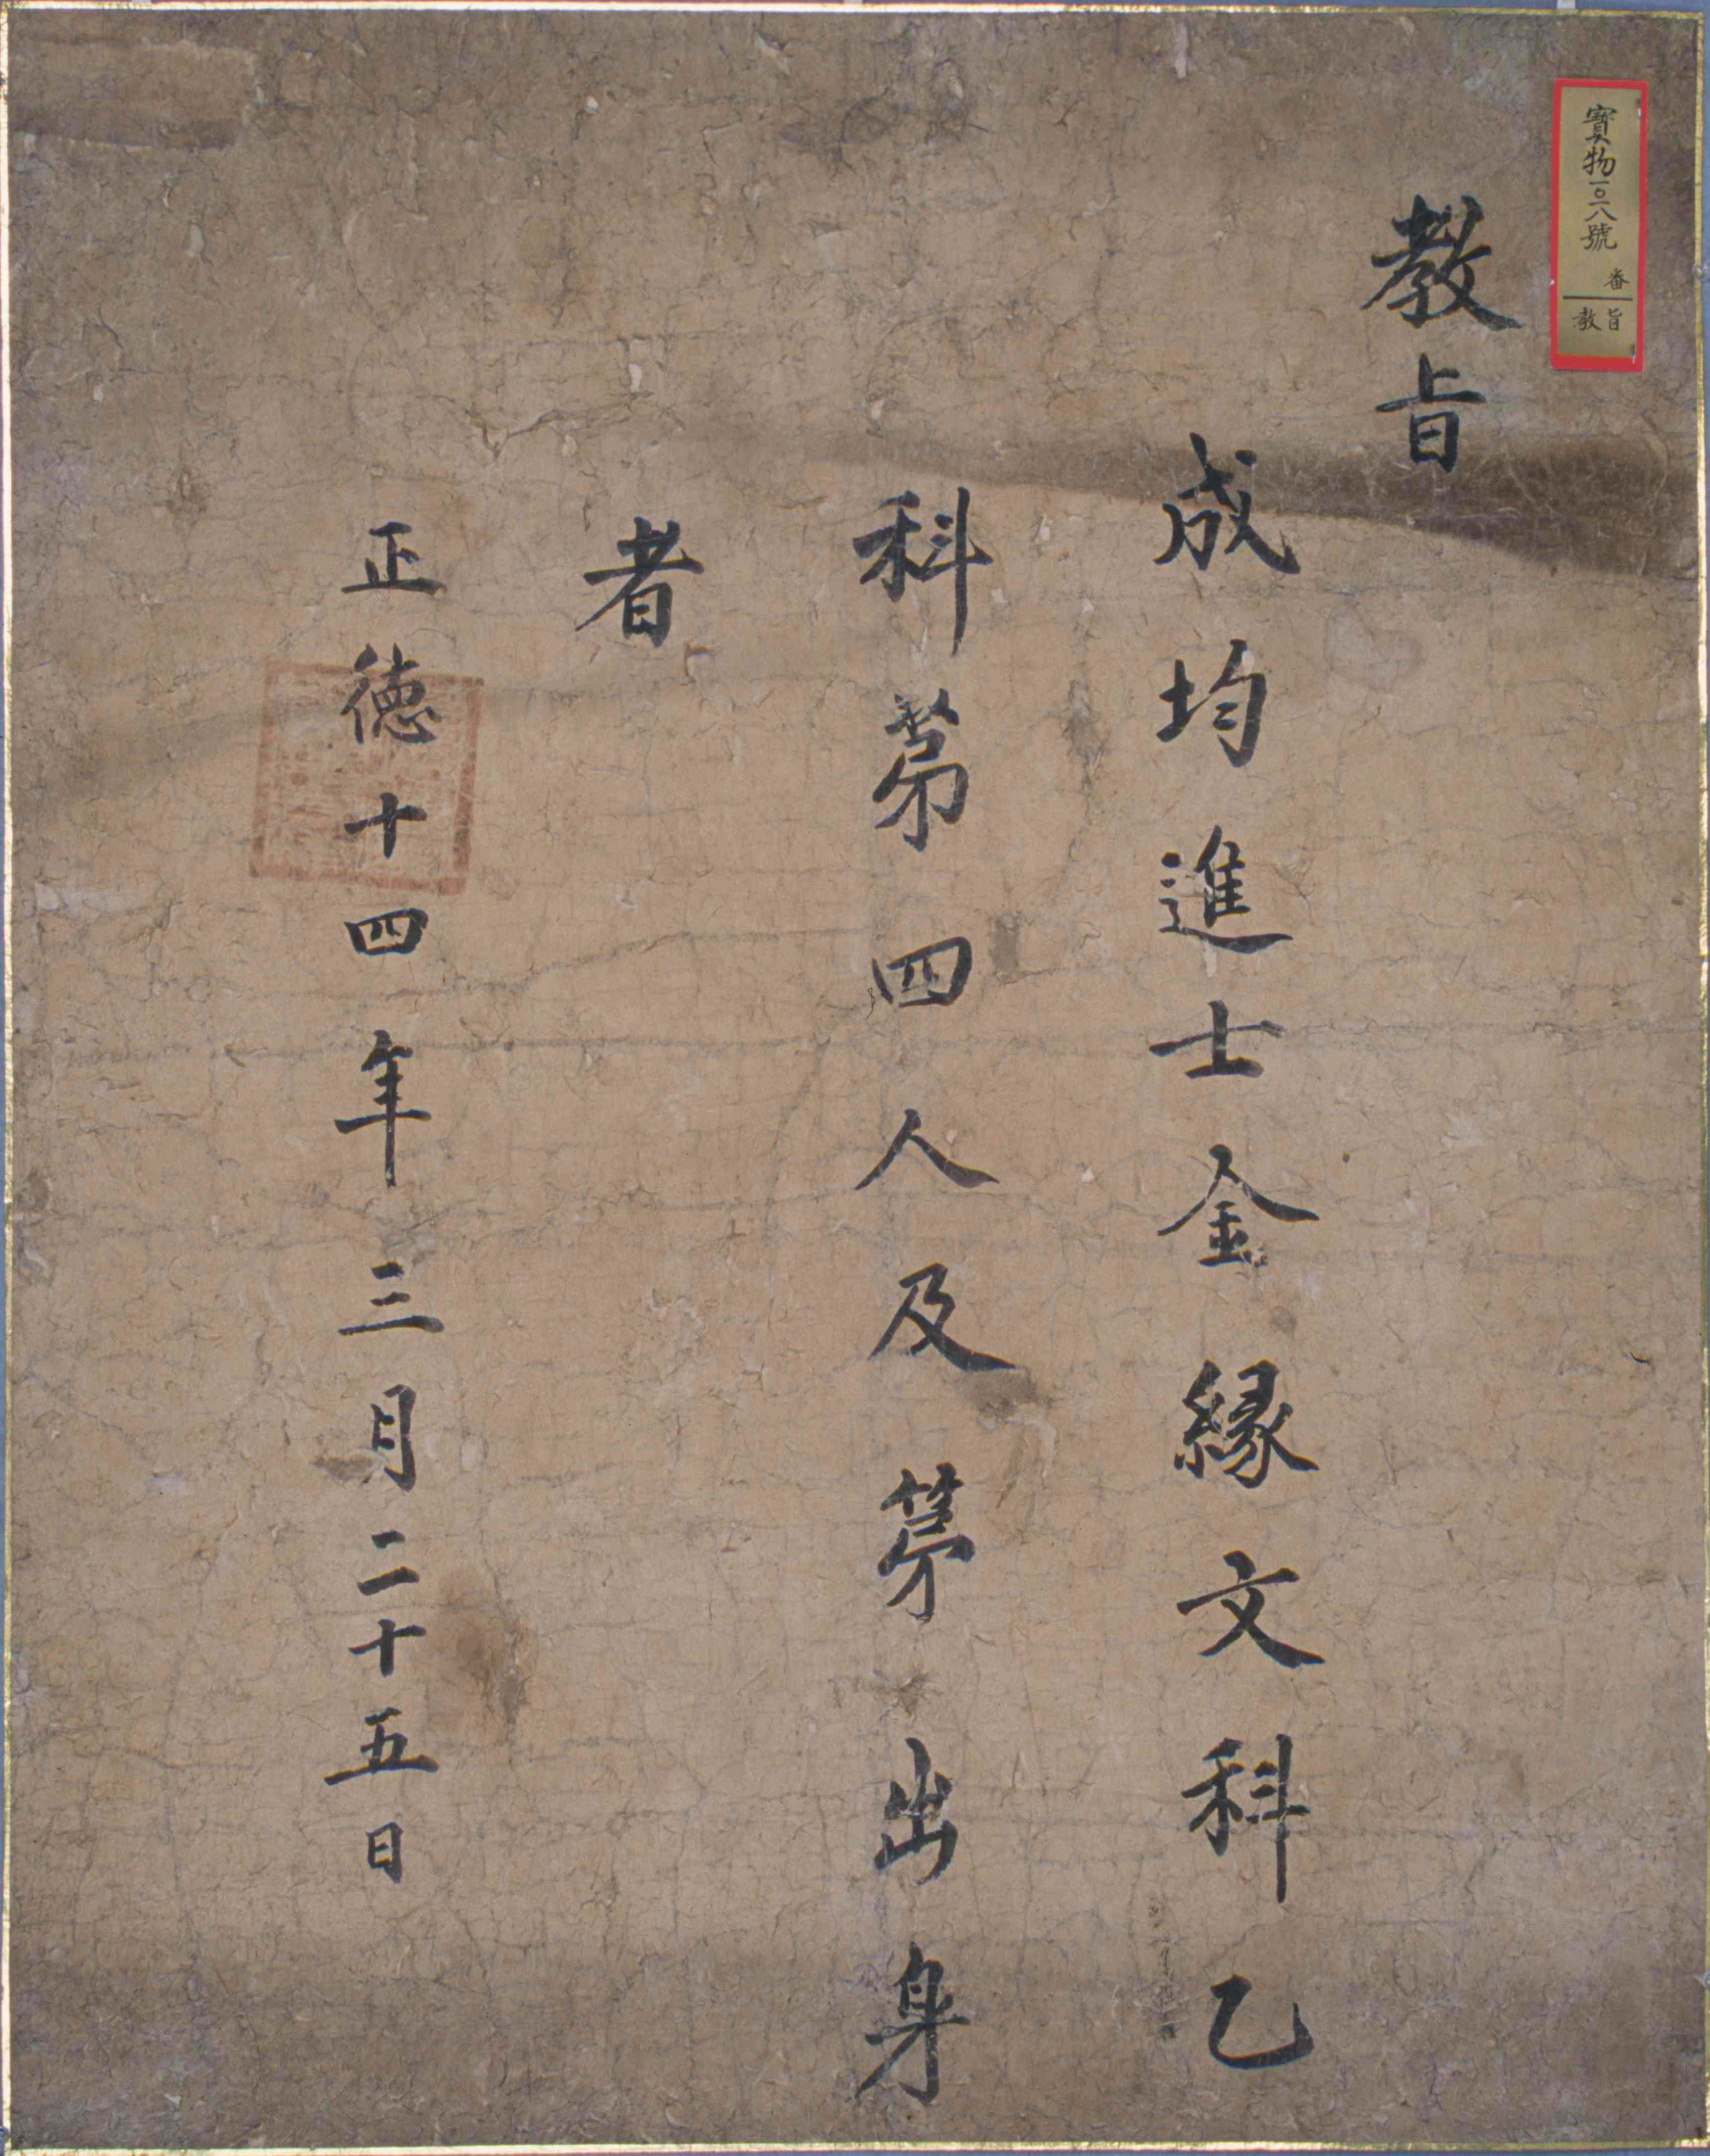 1519년(중종 14)에 국왕이 김연에게 발급한 문과 합격 홍패